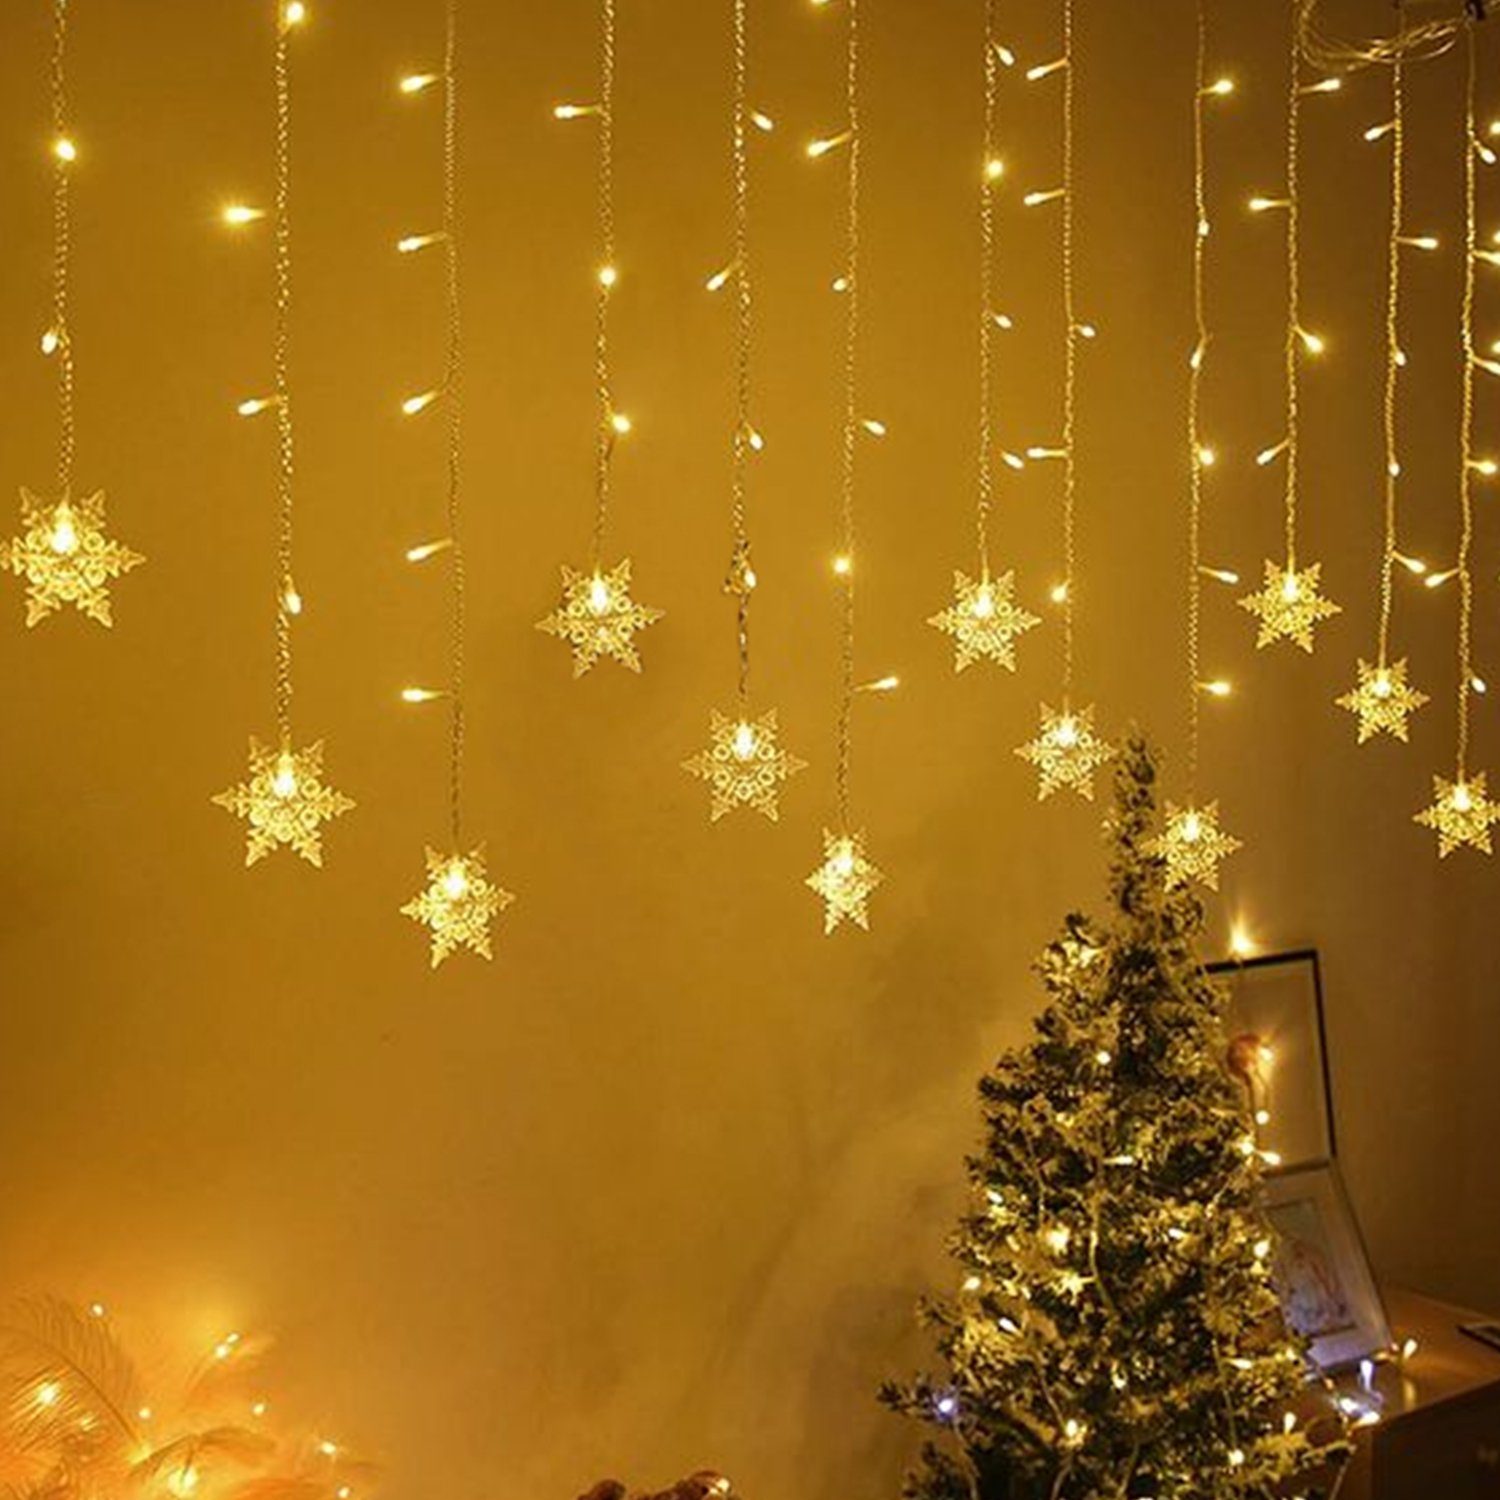 LED-Lichterkette 108 3m Salcar Lichtervorhang Weihnachten LED Schneeflocken